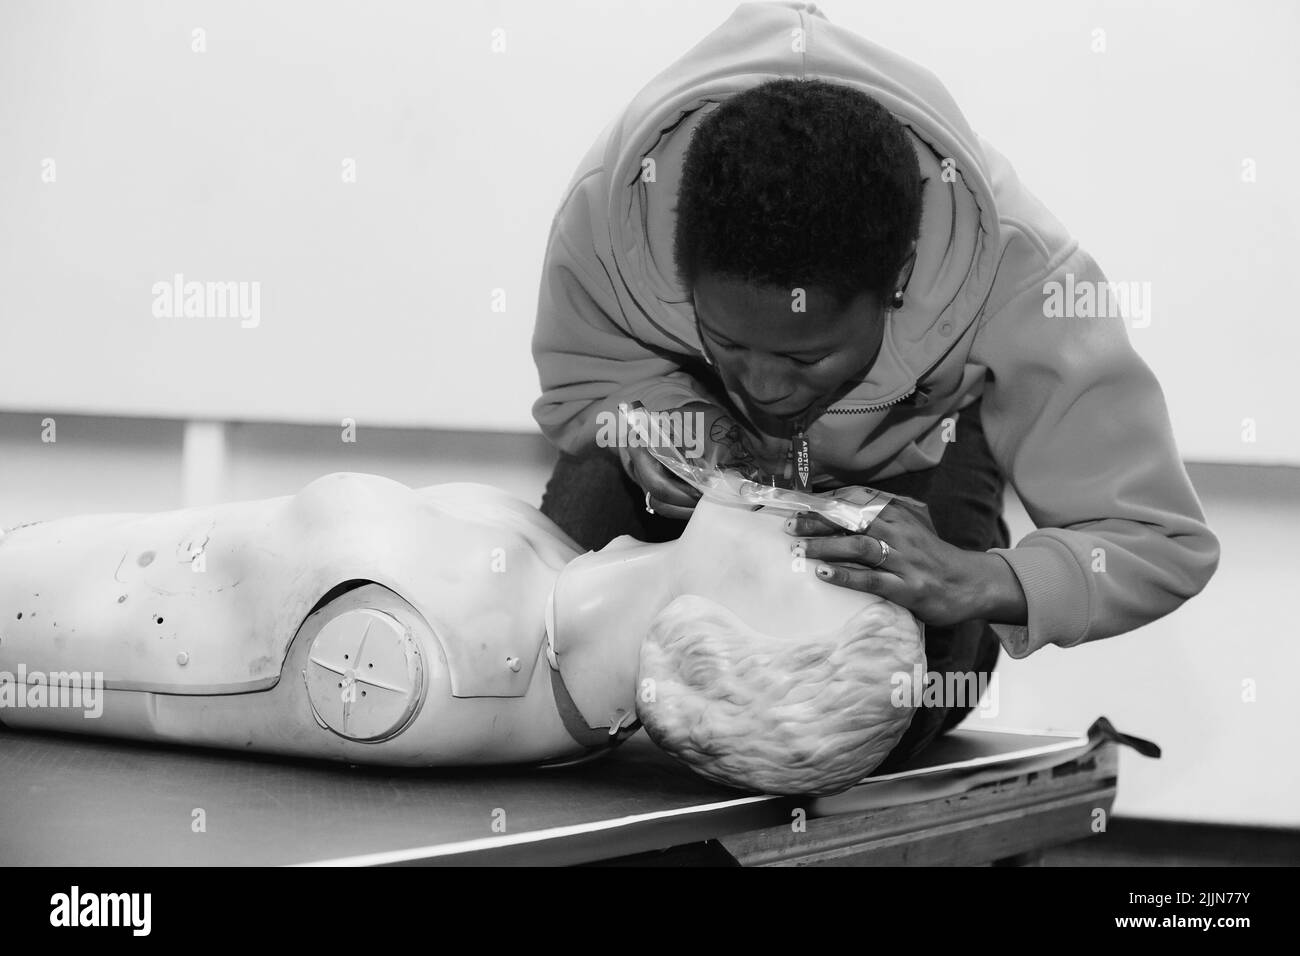 Prise de vue en niveaux de gris d'une personne qui effectue une formation en secourisme à la RCP à l'aide d'un mannequin en plastique Banque D'Images